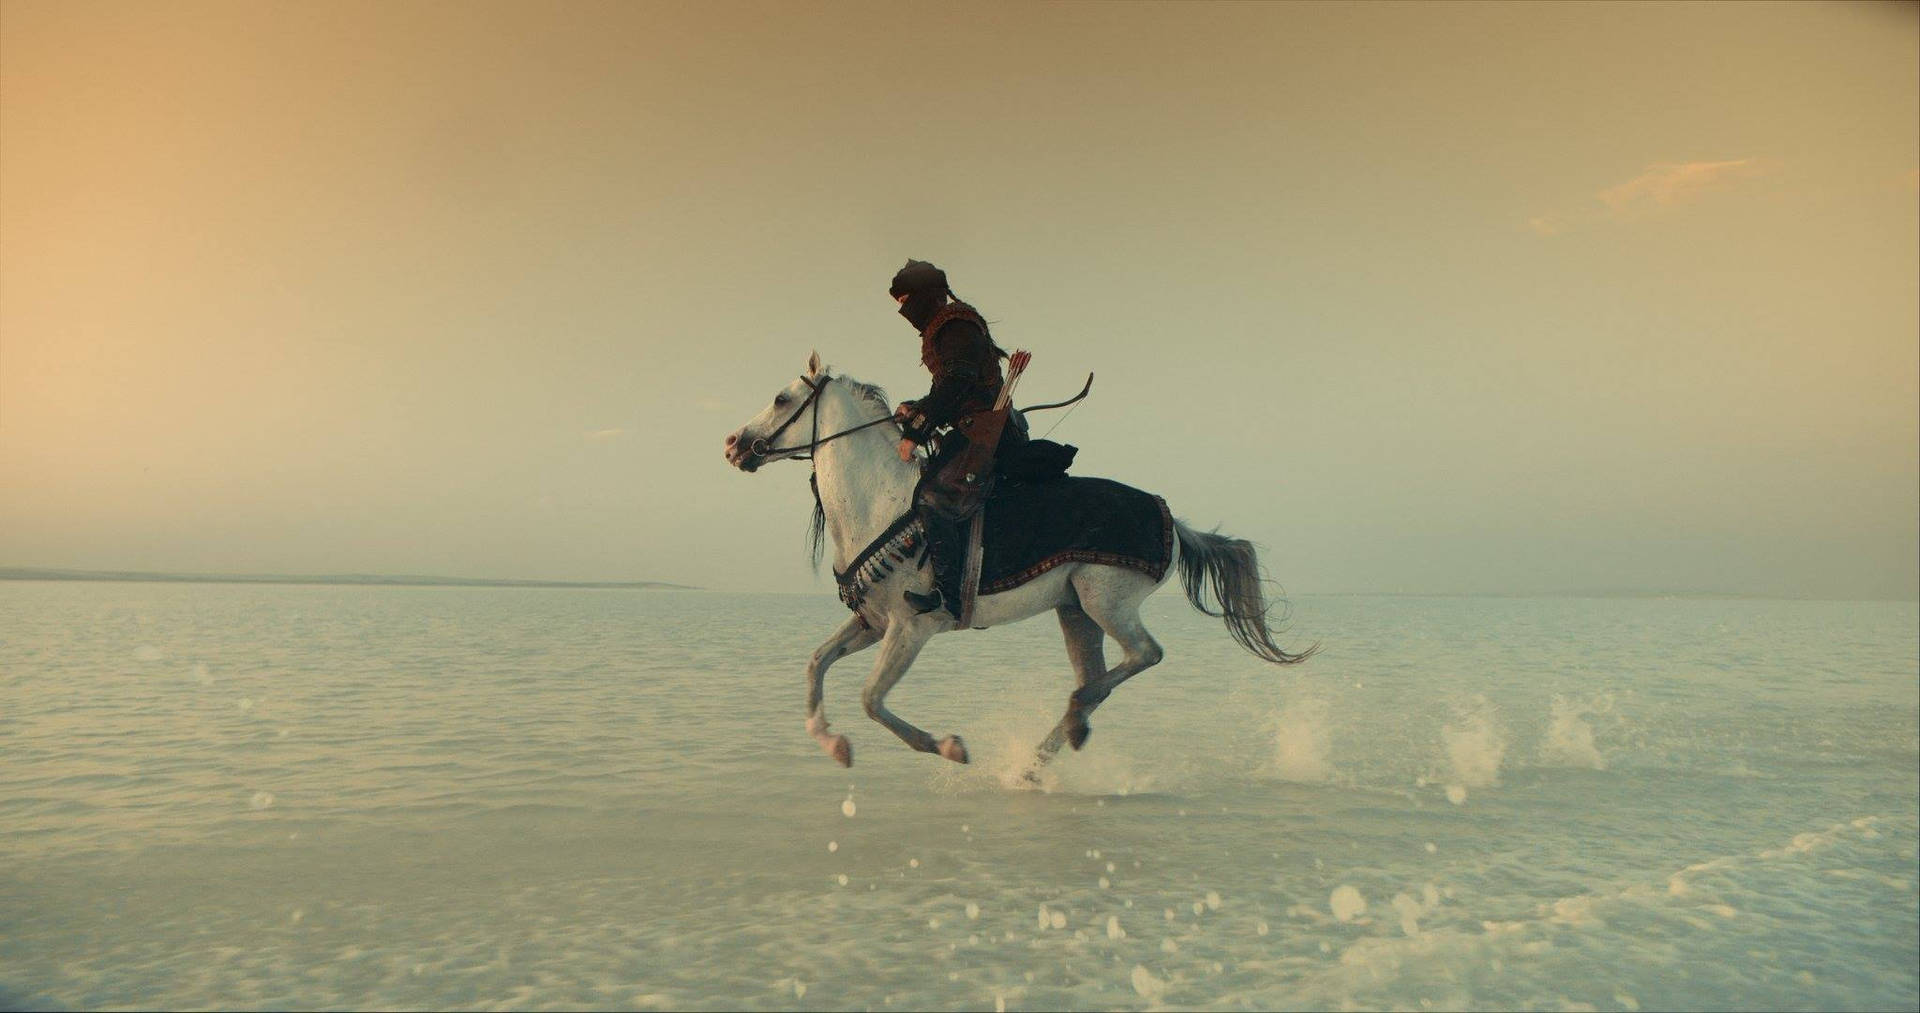 Ertugrul Gazi Riding Horse On Water Background